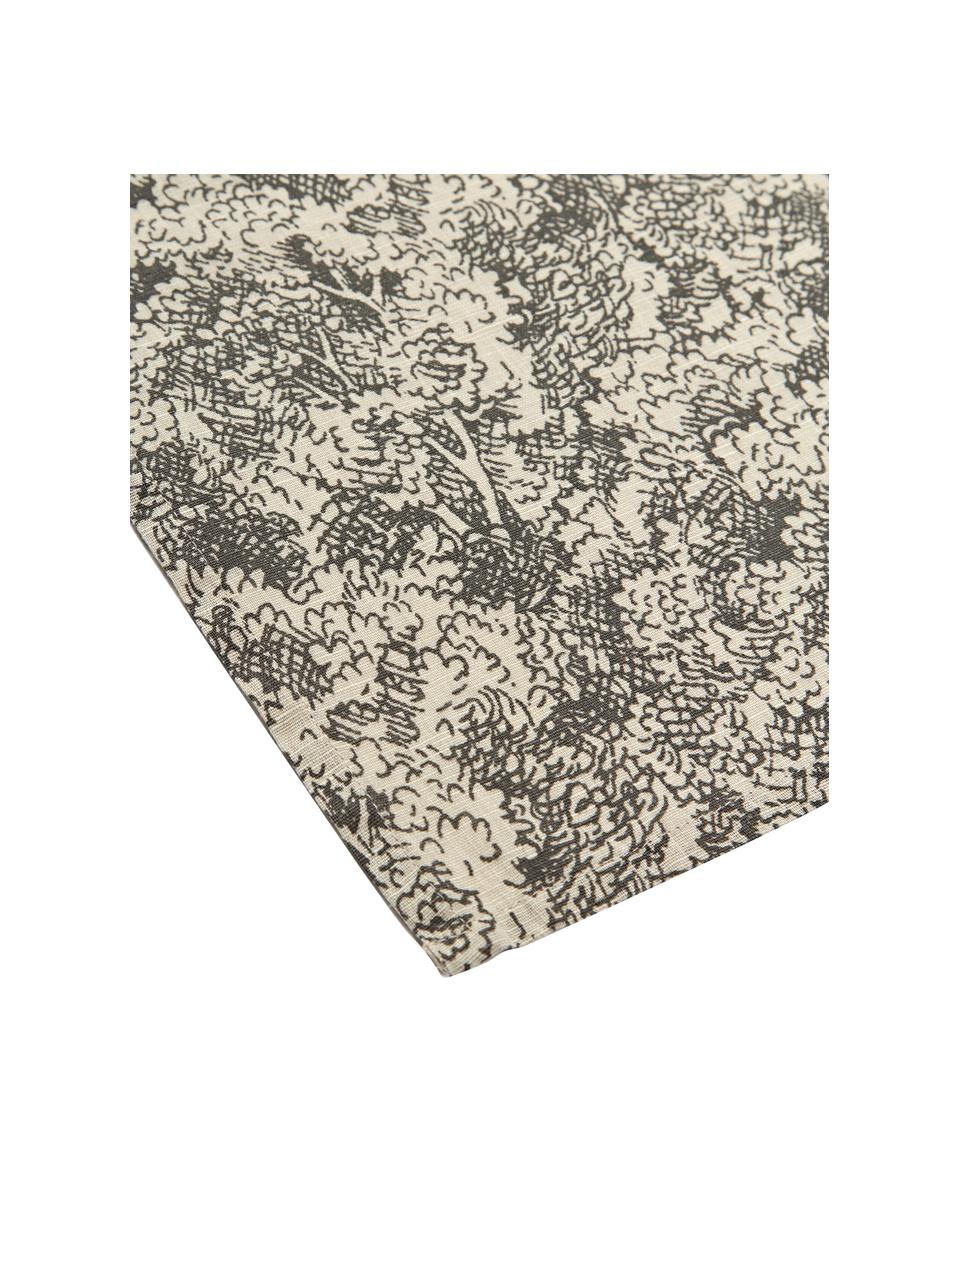 Tischsets Lundaskog, 4 Stück, 75 % Baumwolle, 25 % Leinen, Greige, Beige, B 35 x H 45 cm